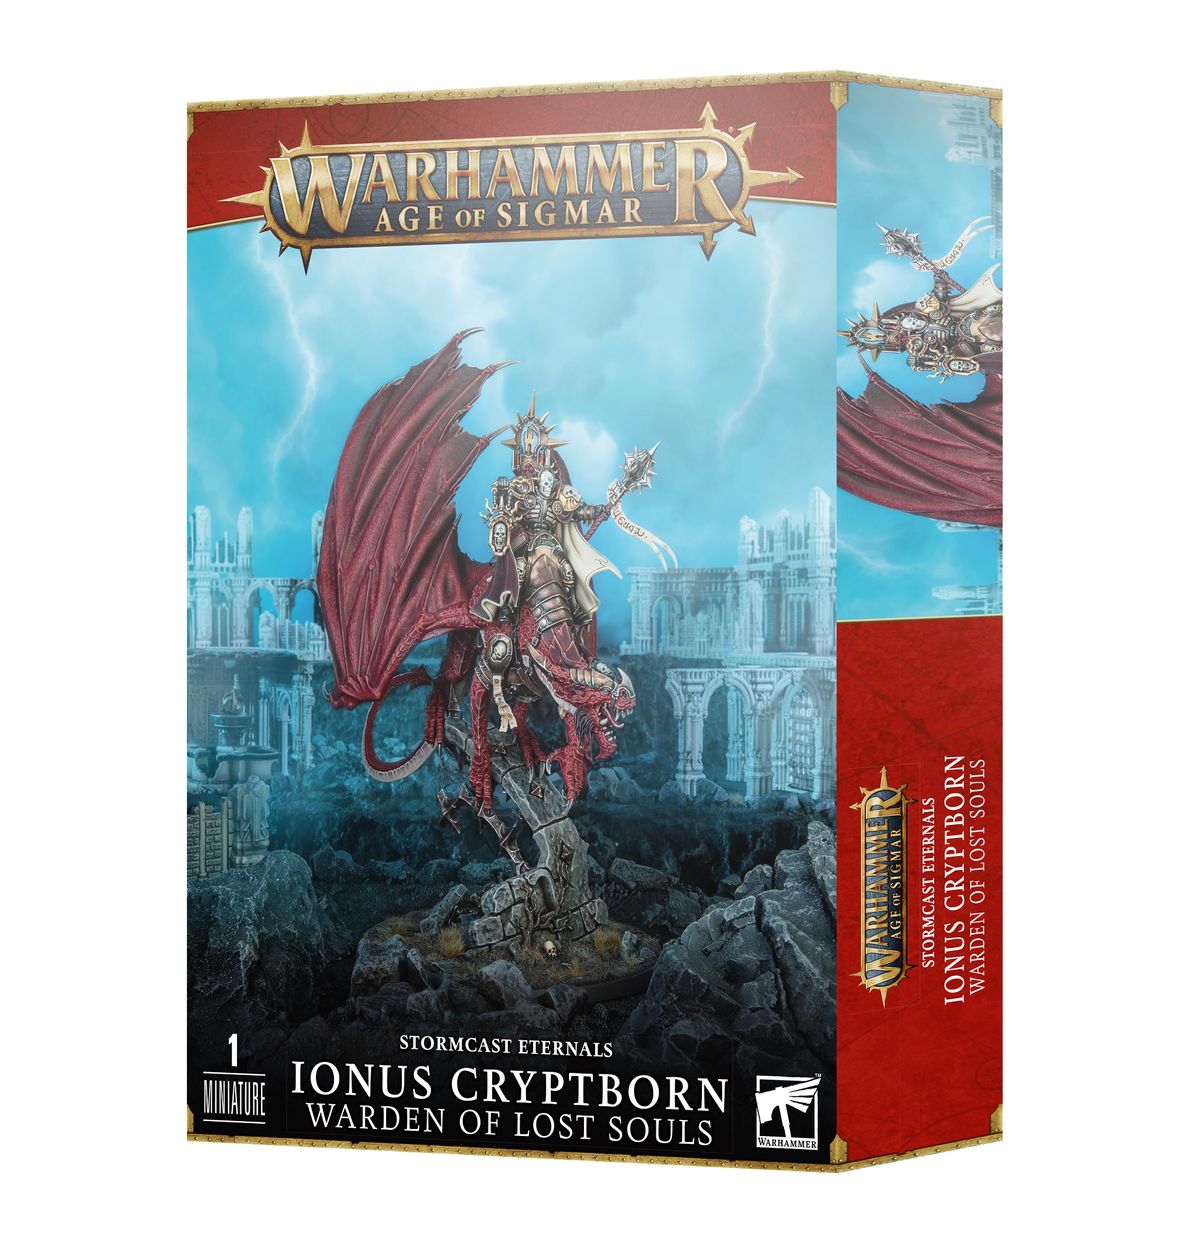 Миниатюры для игры Games Workshop Warhammer Age of Sigmar: Ionus Cryptborn 96-61 тени вокруг трона историчекские миниатюры